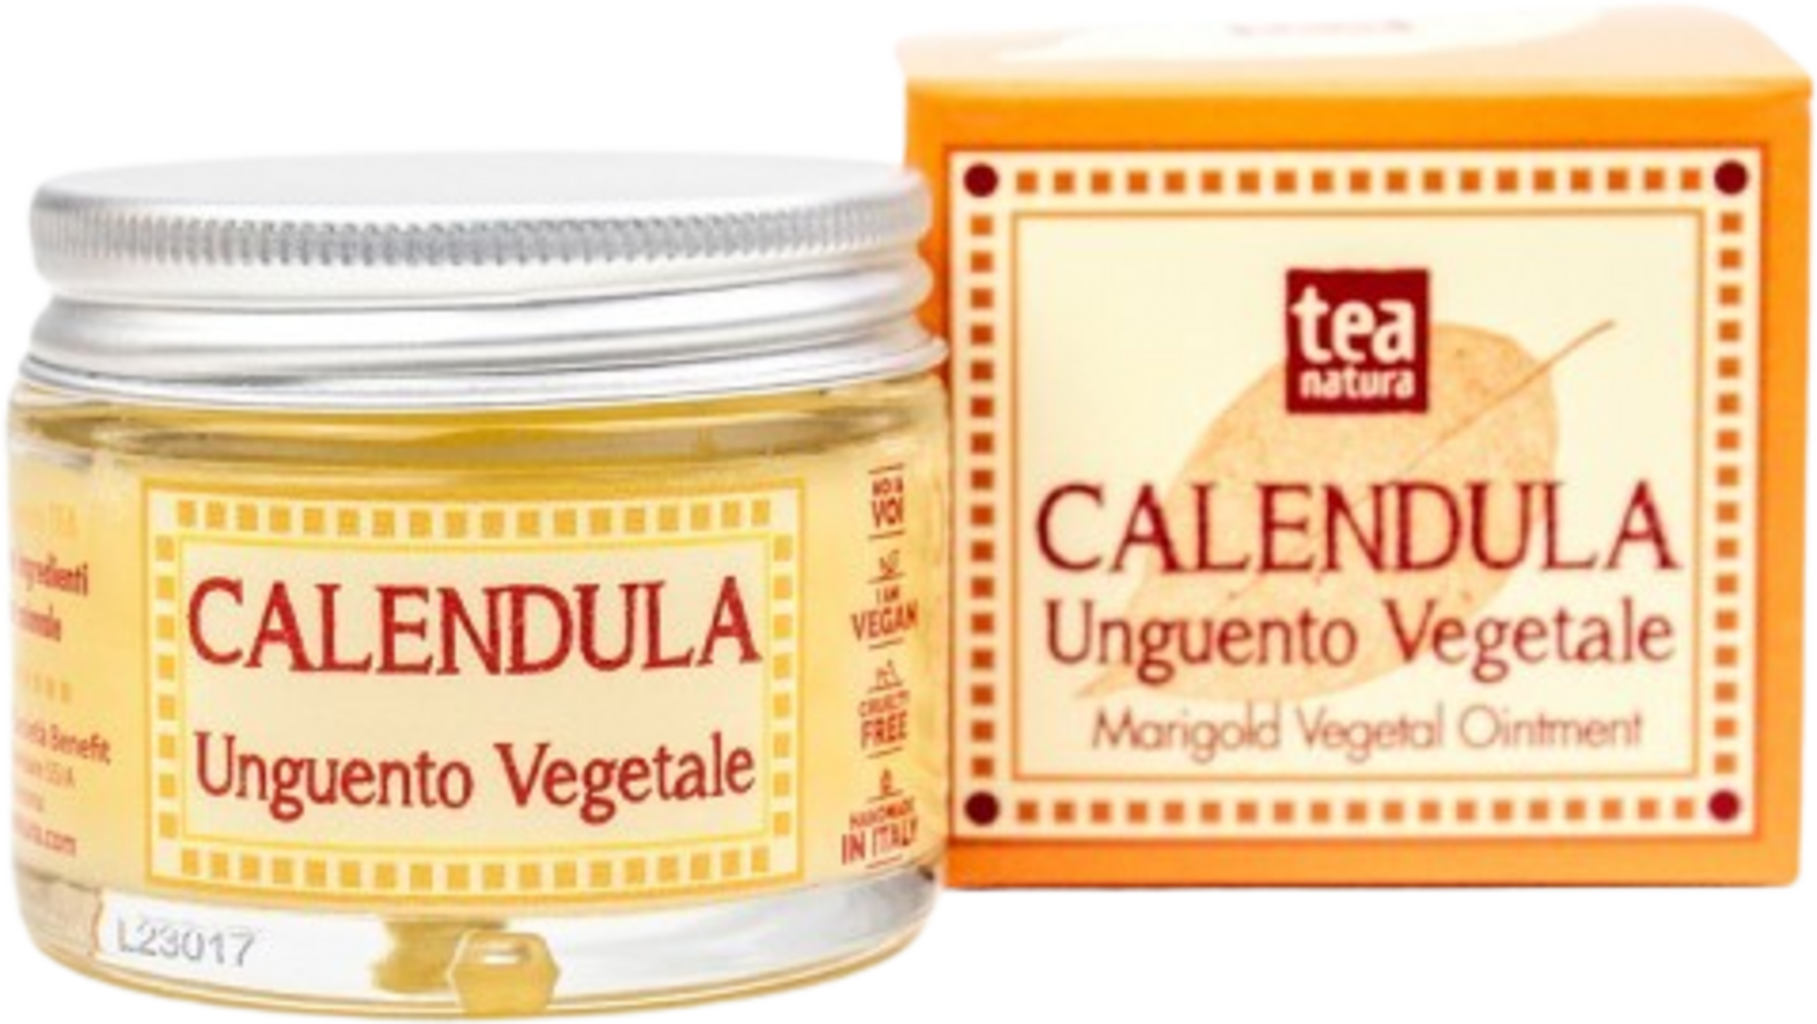 TEA Natura Bálsamo con Caléndula - 50 ml